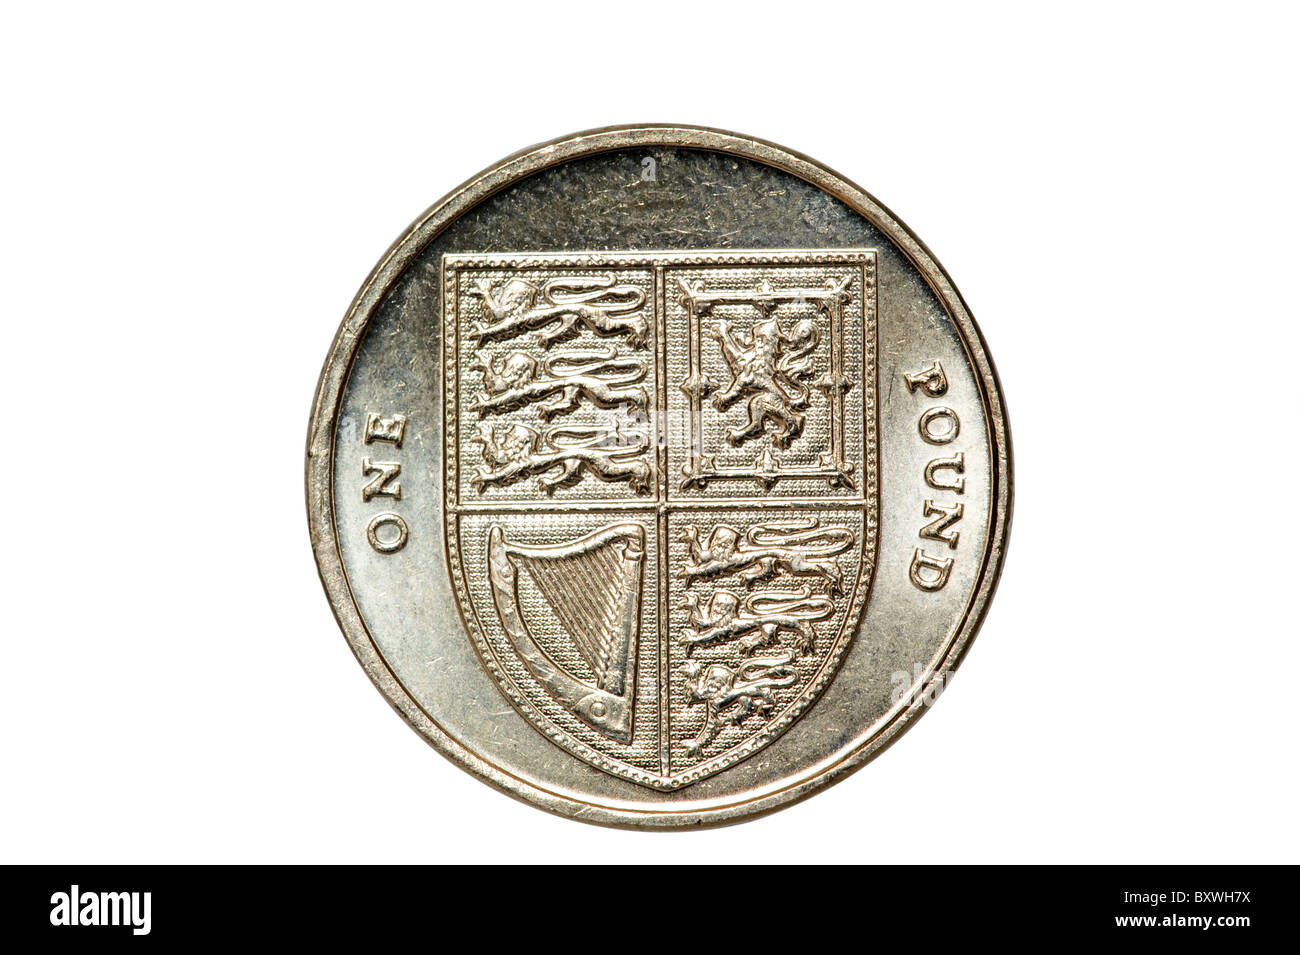 Cerca de 2009 una libra esterlina británica moneda. Sólo para uso editorial Foto de stock